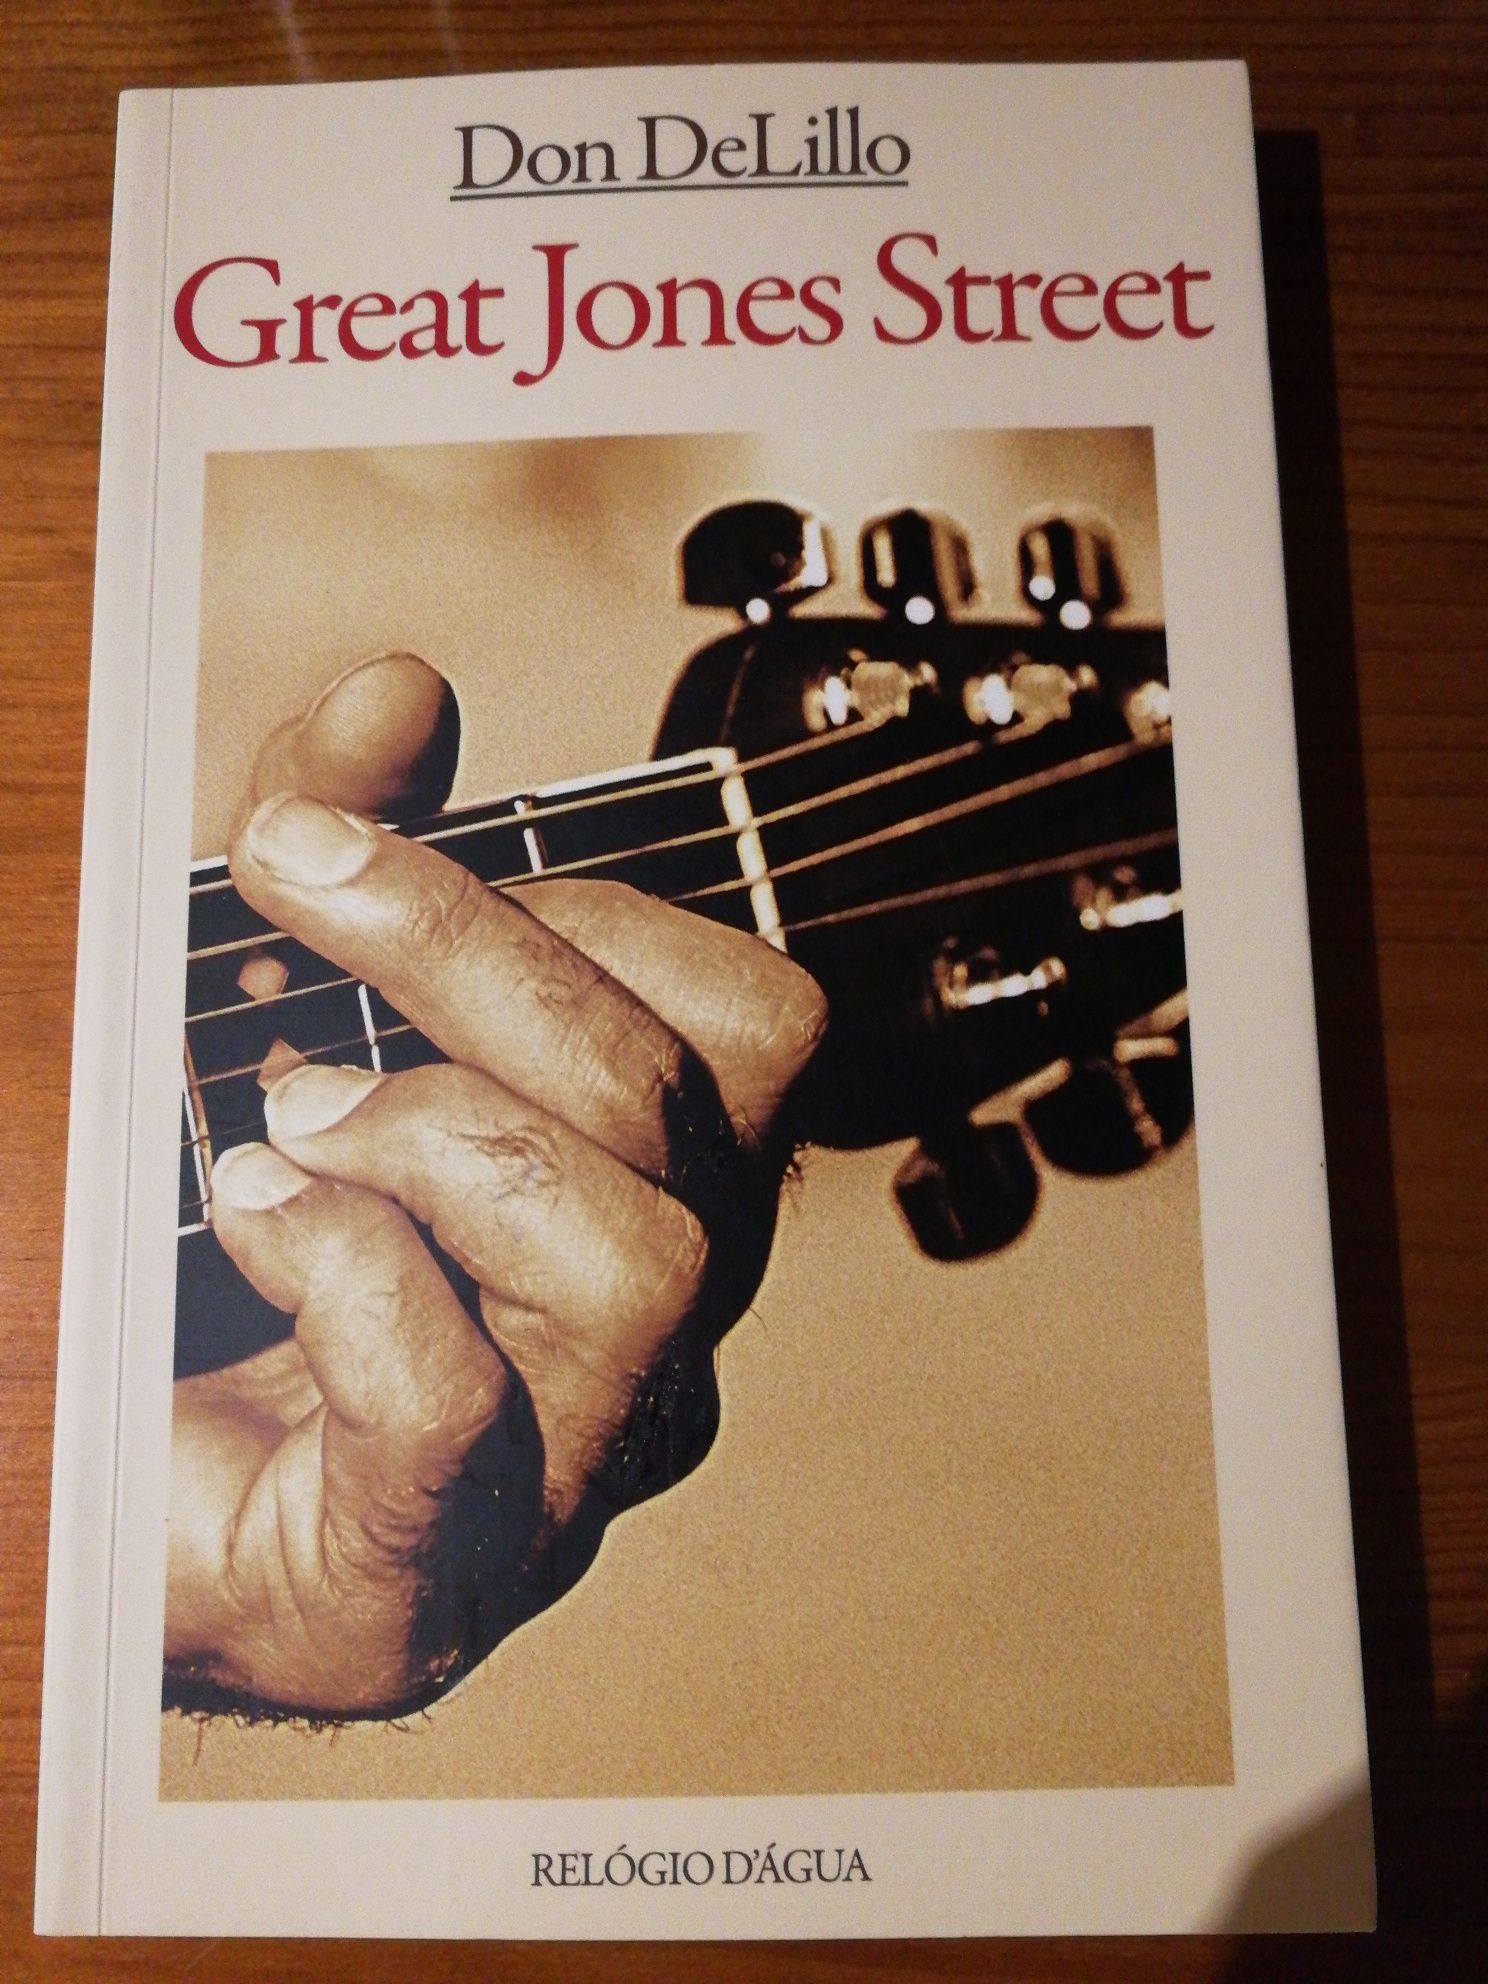 Livro "Great Jones Street" de Don deLillo